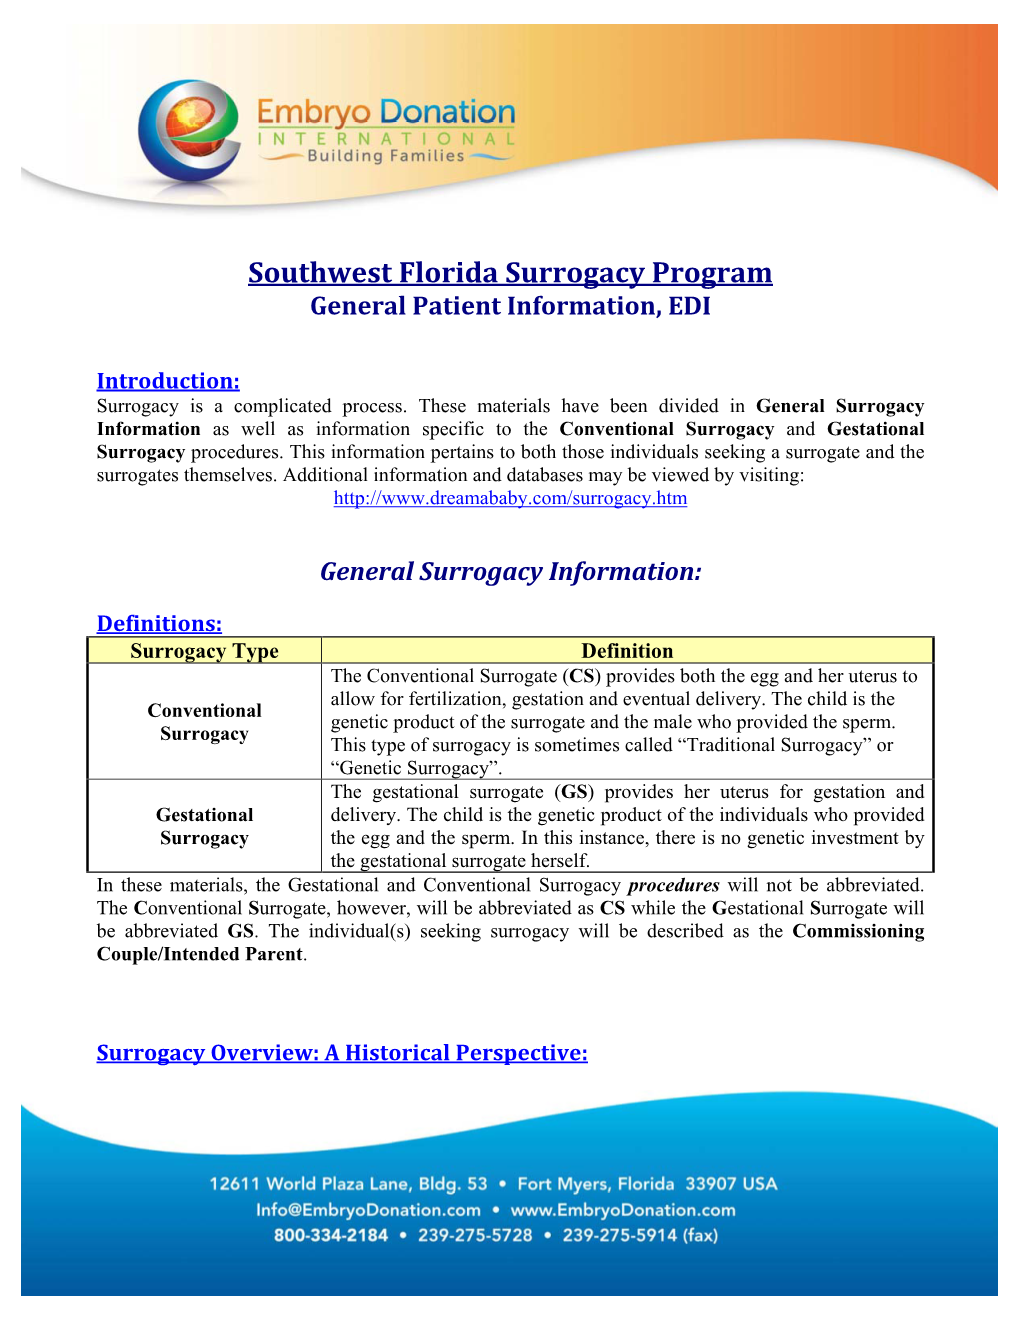 Southwest Florida Surrogacy Program General Patient Information, EDI